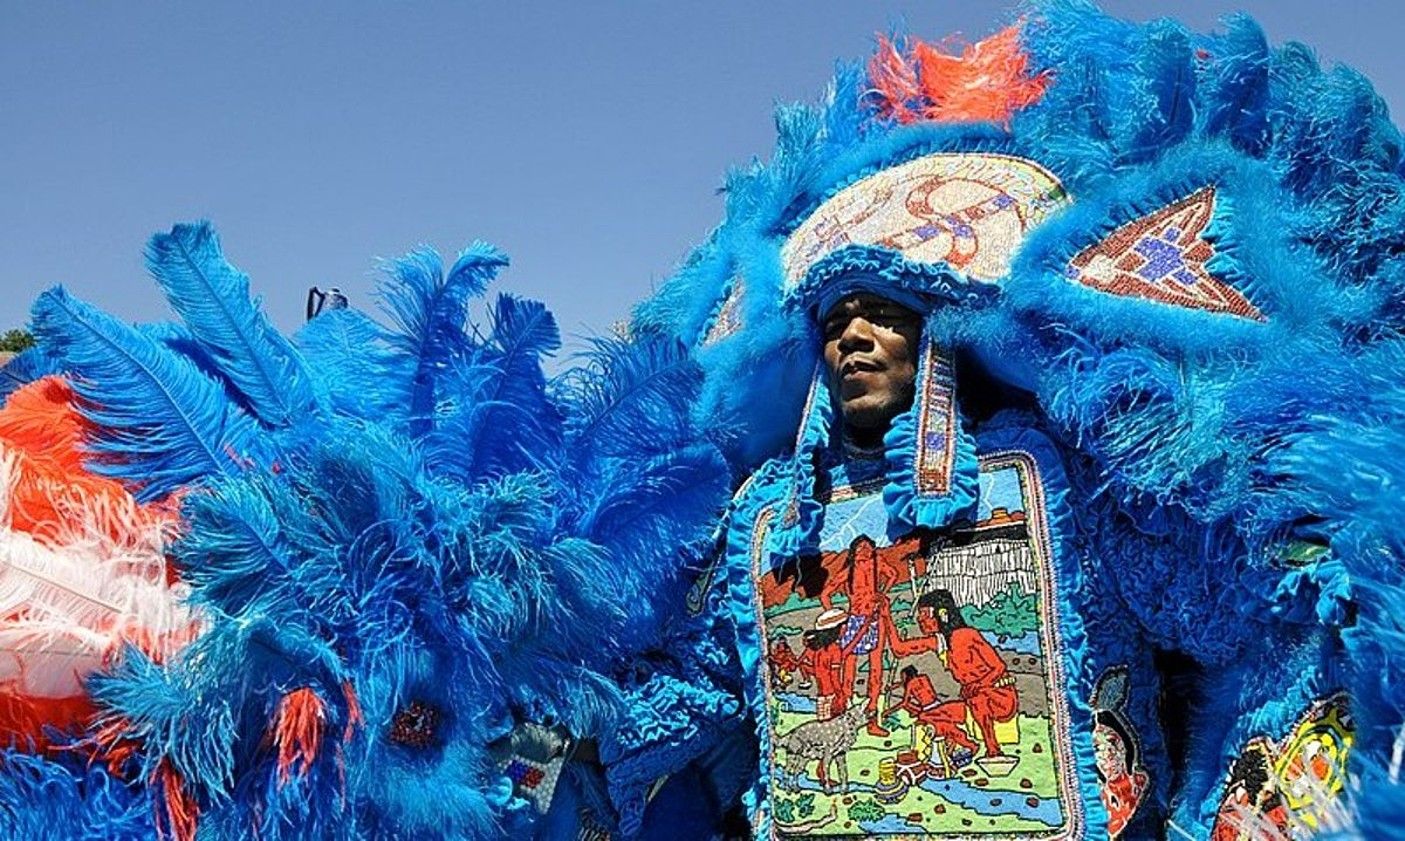 Mardi Grass Indians ihaute garaiko usadioaren irudia, 2011n New Orleans hirian hartua (AEBak). TULANE PUBLIC RELATIONS.